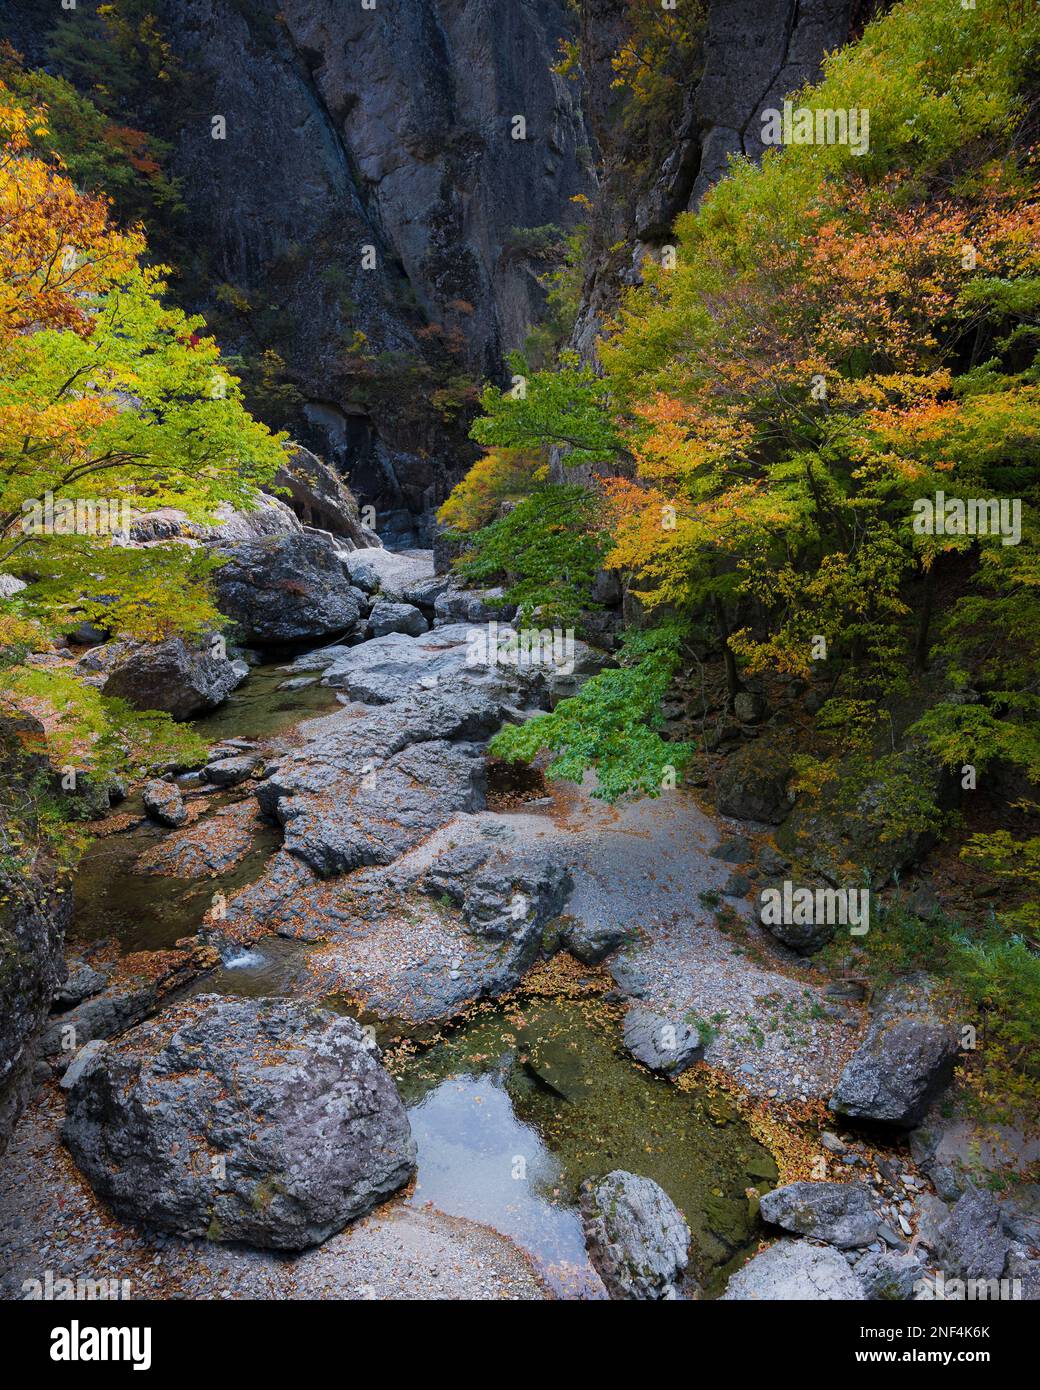 Un petit ruisseau et des feuilles colorées sur Juwangsan pendant l'automne en Corée. Banque D'Images